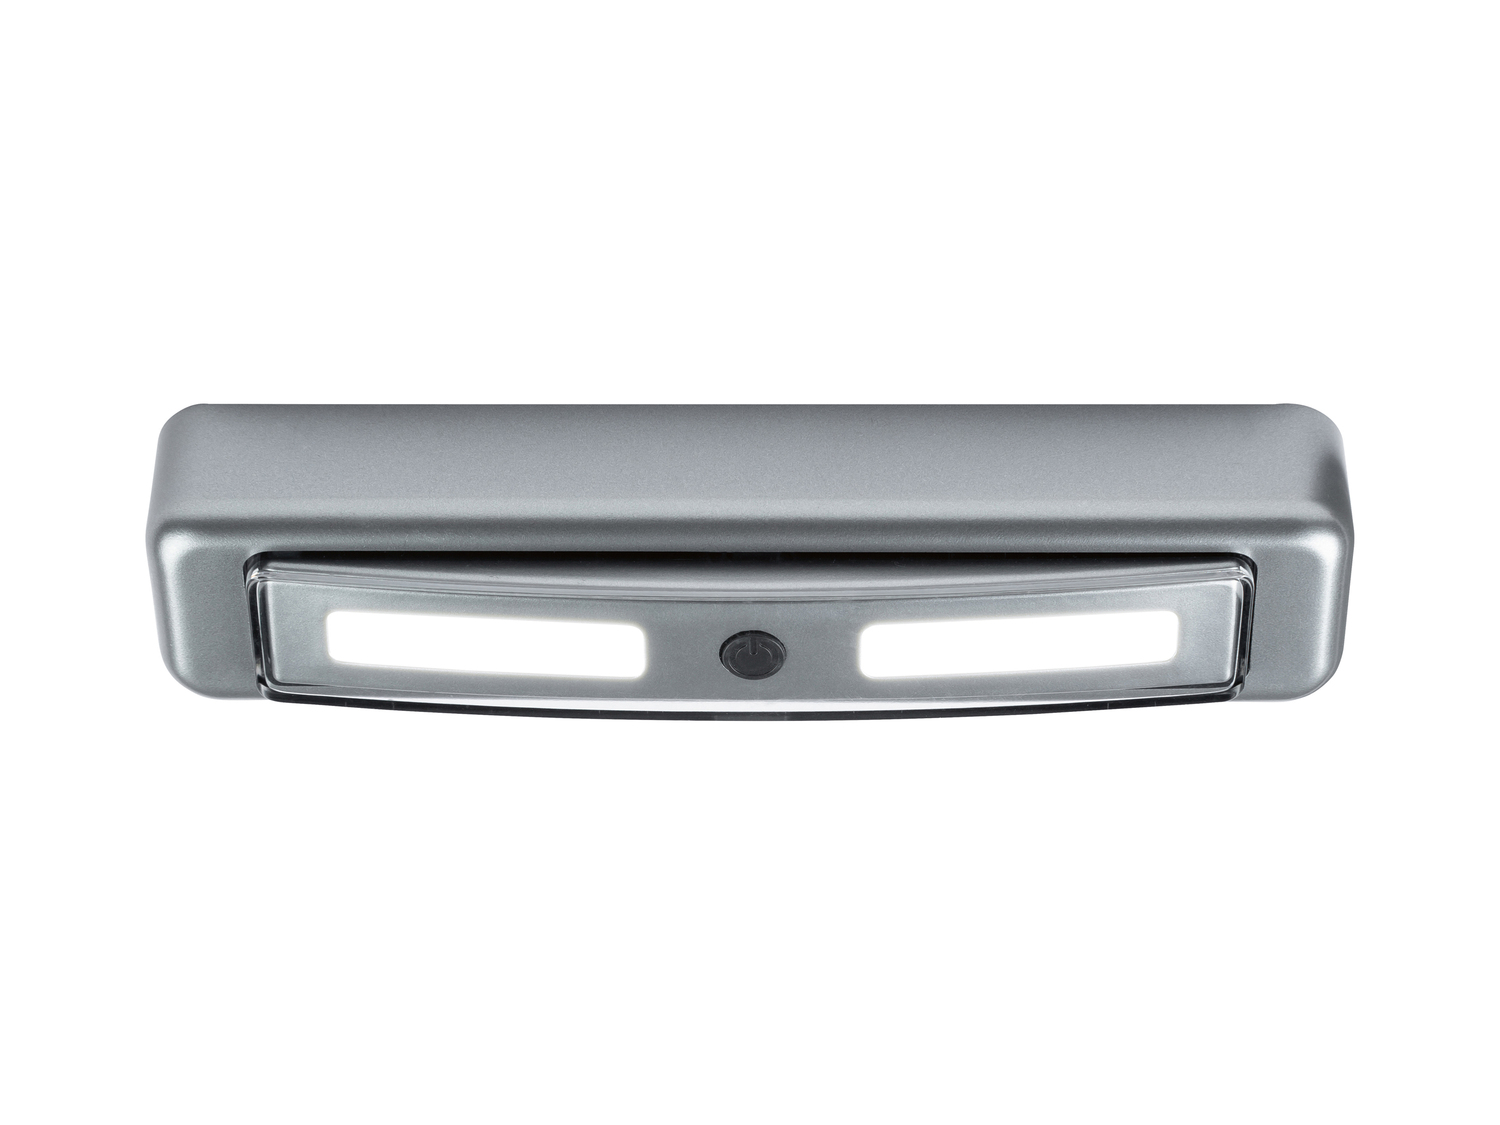 Barra LED per interni Livarno, prezzo 4.99 &#8364; 
2 pezzi 
- Funzionamento ...